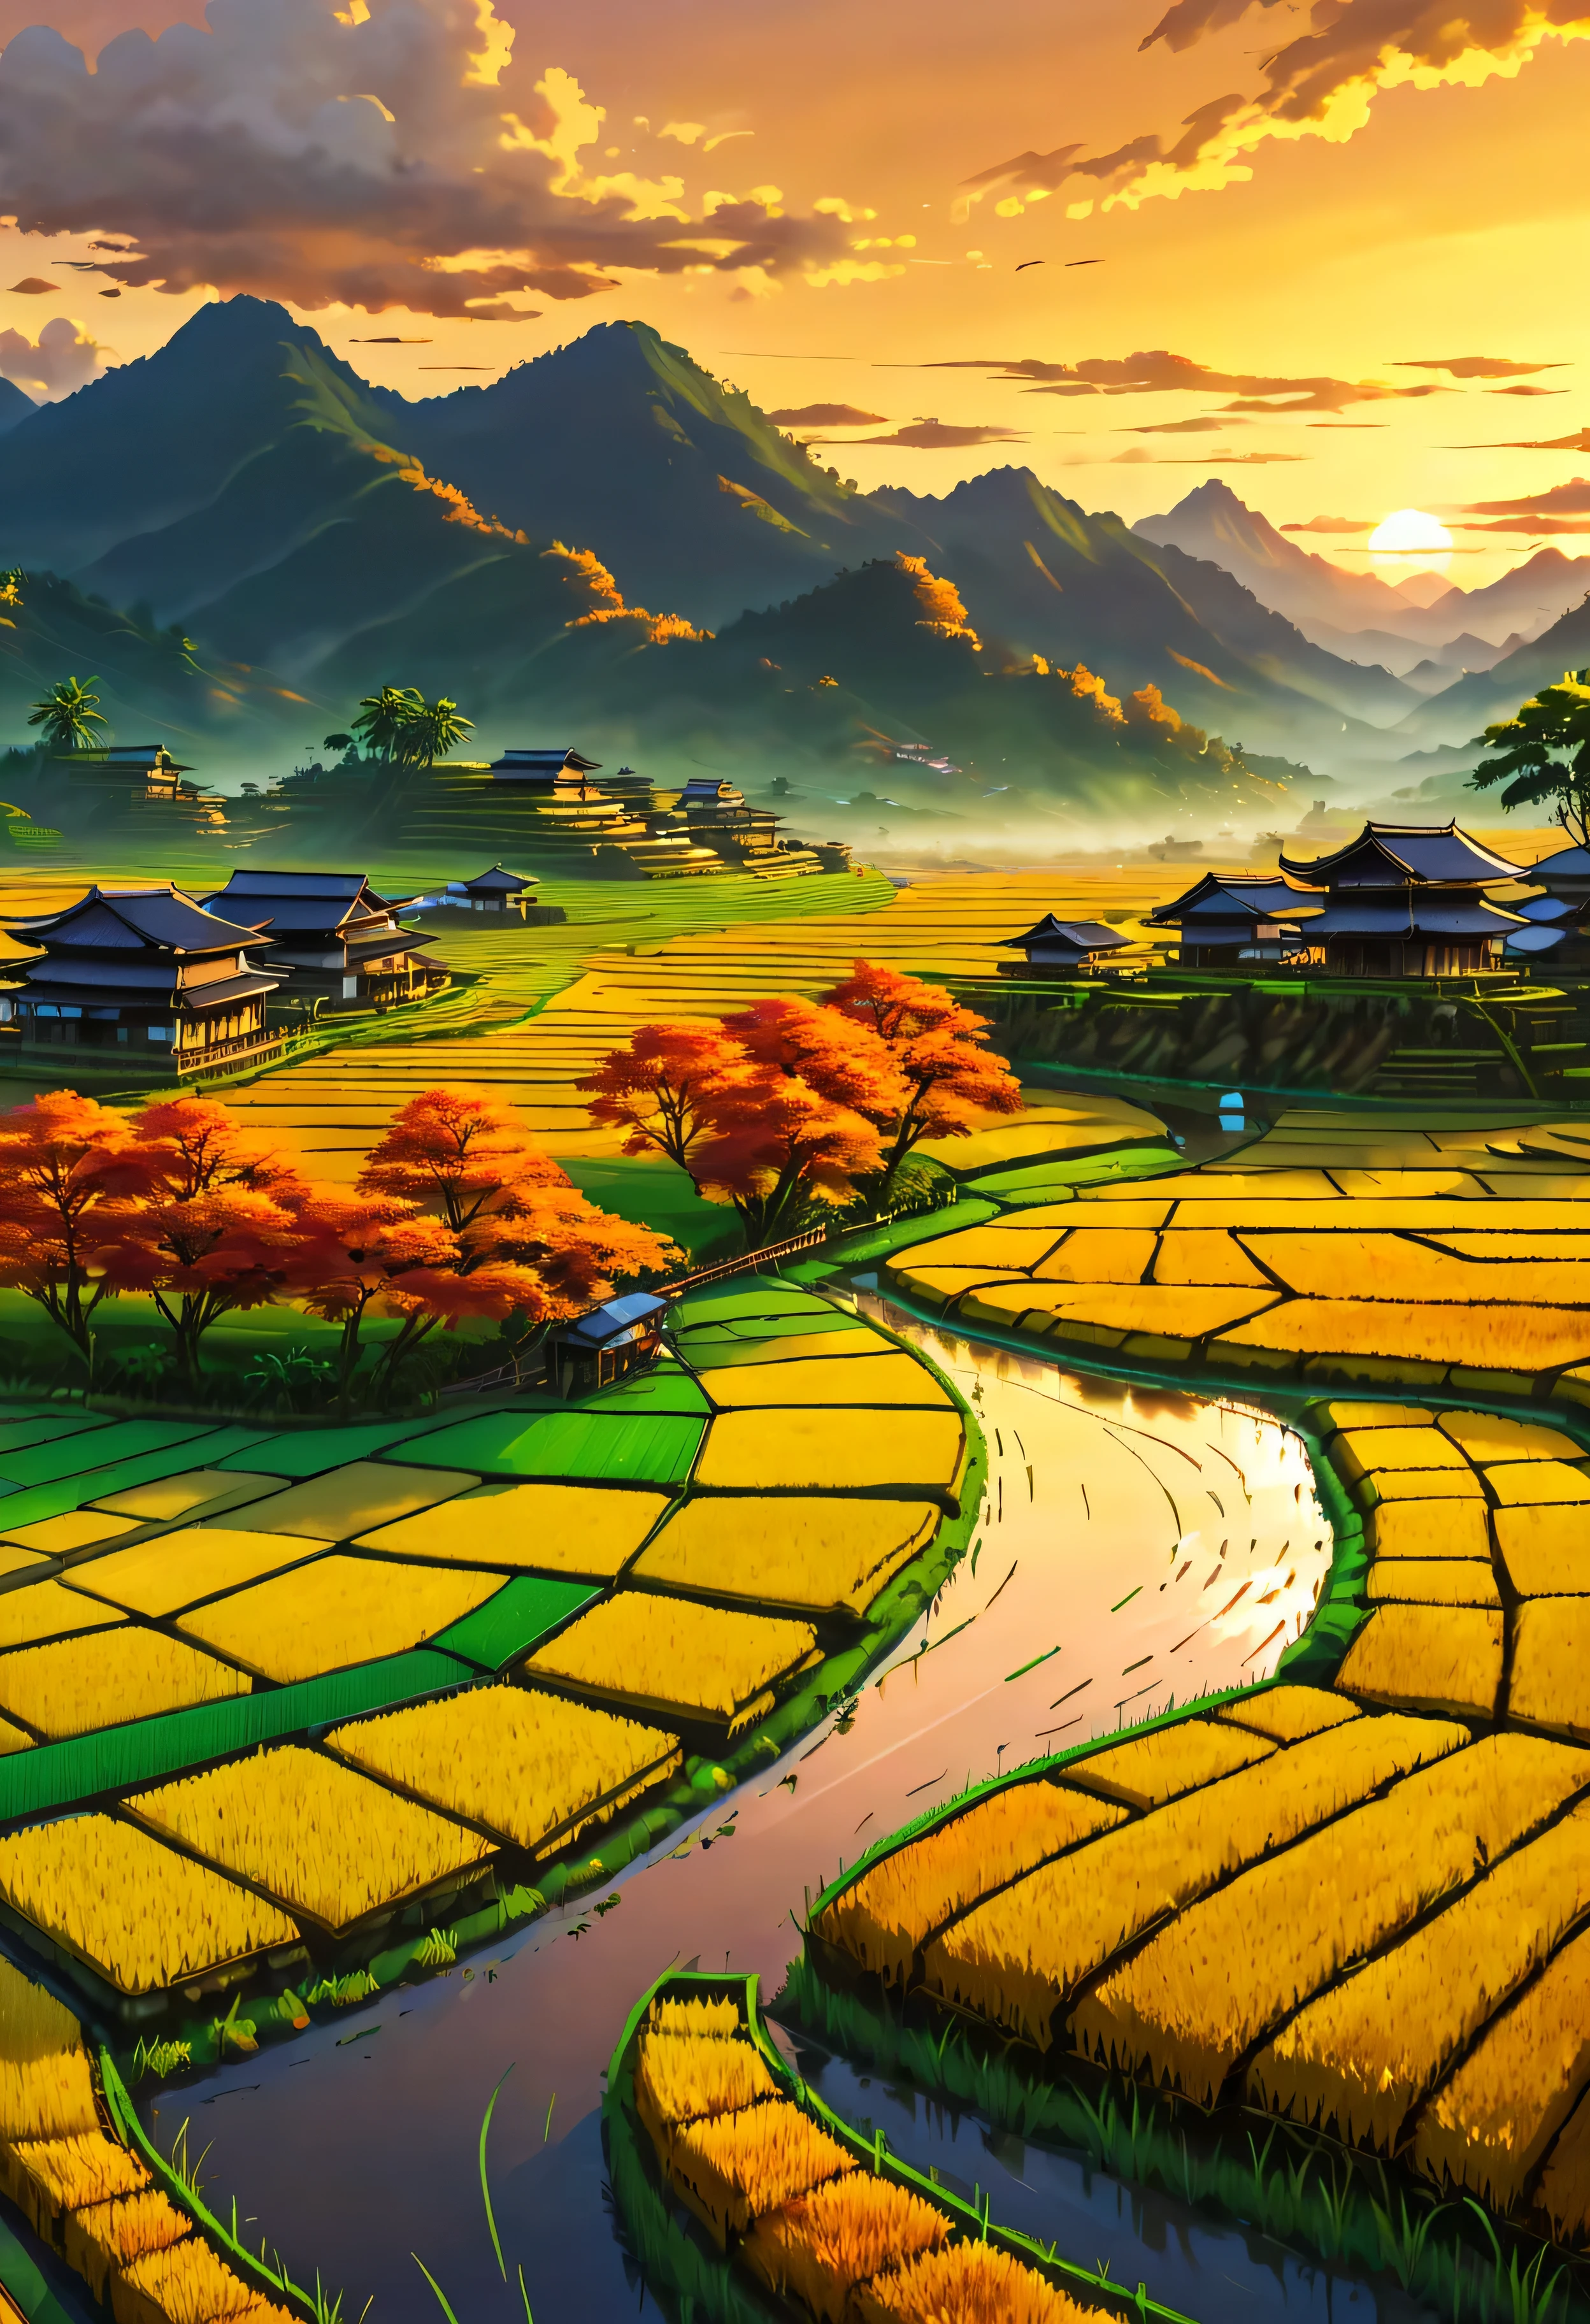 Arrozal dourado maduro no terraço da casa com vista para um campo de arroz com vista para a montanha, hipnotizante paisagem de arrozais banhada pela luz do pôr do sol,((hora de ouro):1.2),((paisagem majestosa):1.2),((Céu do pôr do sol no outono):1.1),delicada luz dourada da hora, papéis de parede incríveis, belos cenários, pintura fosca otimista, linda arte digital, Cenas lindas e detalhadas, Subterrâneo UHD, Paisagem UHD, Arte conceitual majestosa, lindo campo de arroz. |(Obra-prima em resolução máxima de 16K), a melhor qualidade, (qualidade de papel de parede 16k de unidade CG muito detalhada),(Cores suaves 16k arte digital altamente detalhada),Super detalhado. | imagem perfeita,16k UE5,pintura oficial, superfino, profundidade de campo, sem contraste, Foco nítido e limpo, profissional, Sem desfoque. | (((Mais detalhes))).